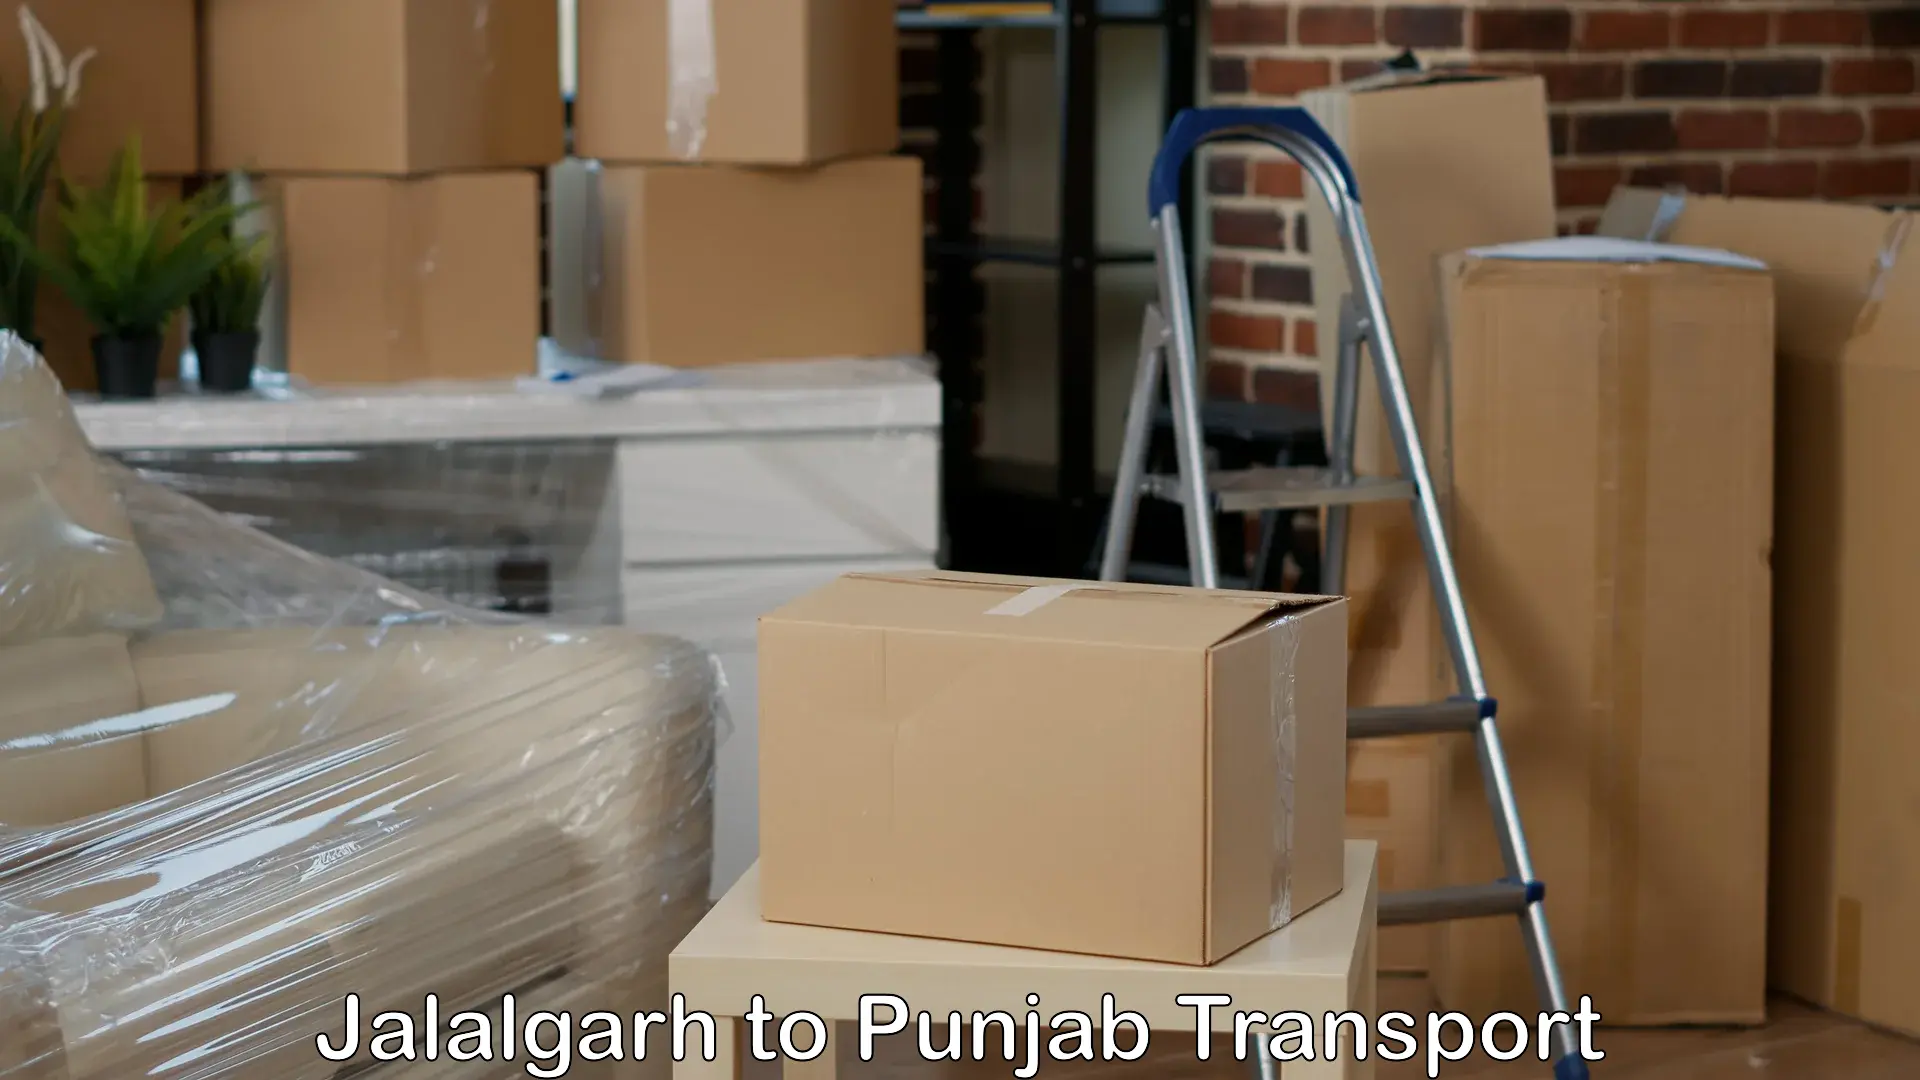 Shipping services Jalalgarh to Bathinda